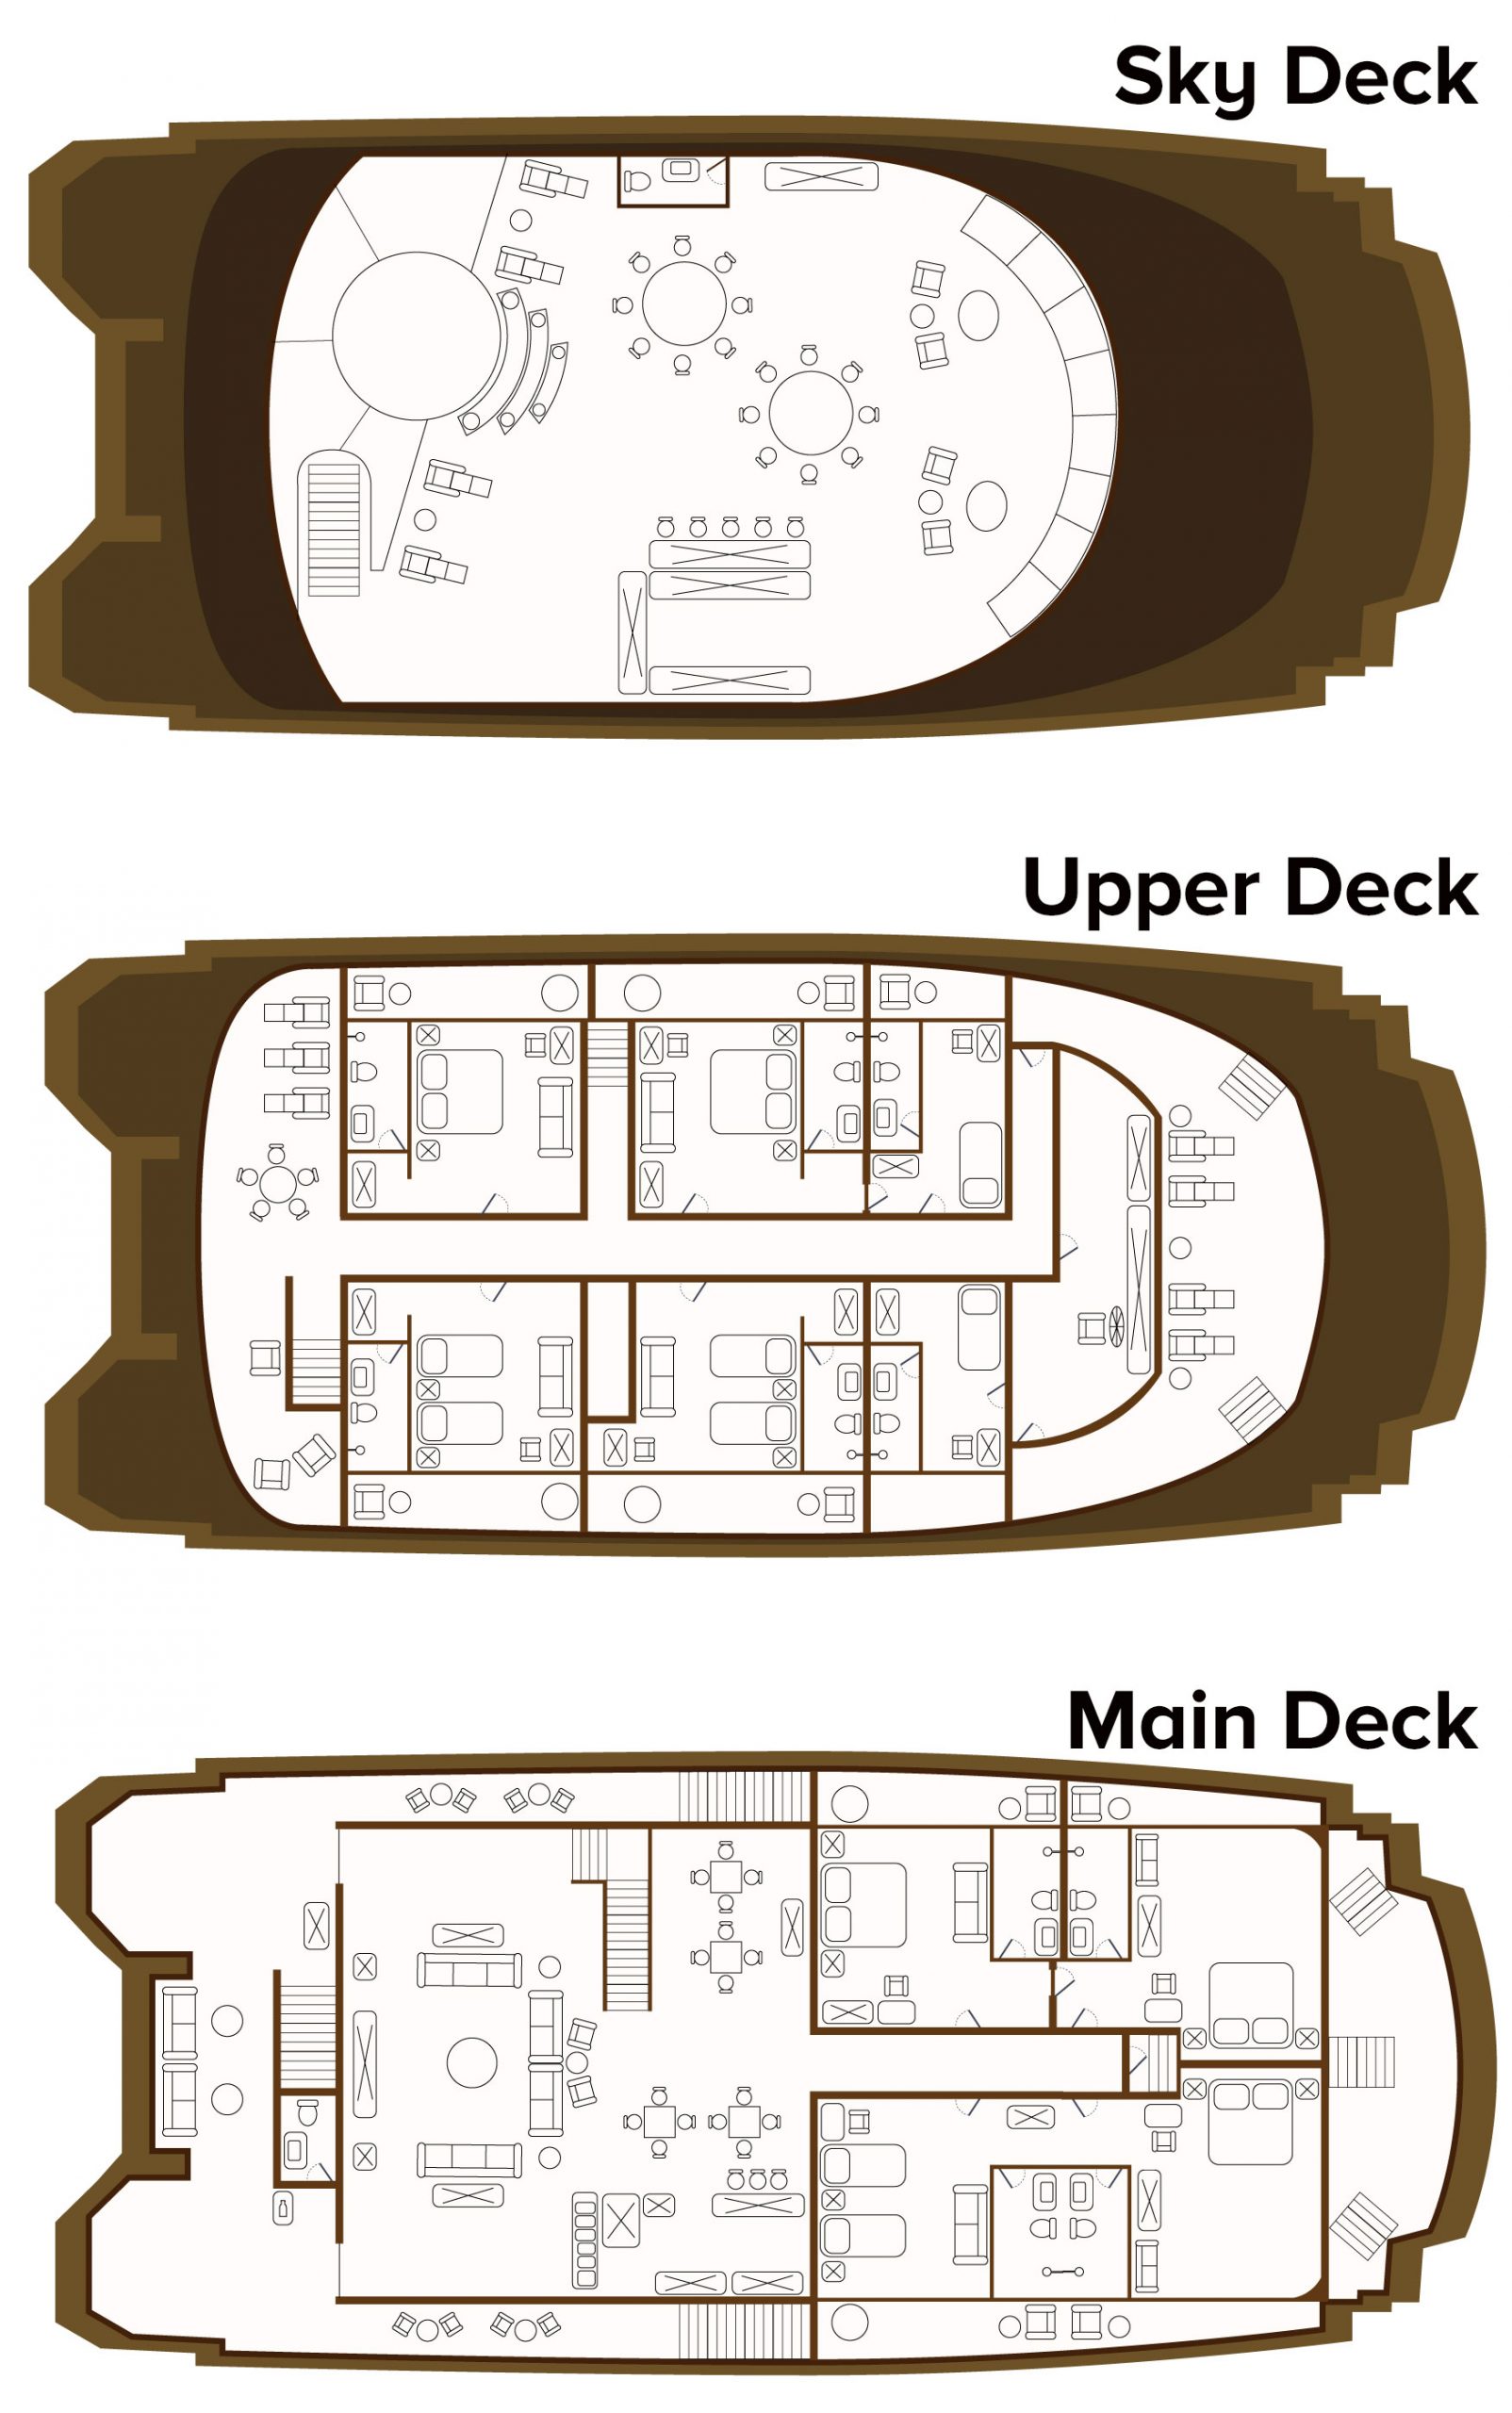 Deck plan of mc Elite Galapagos catamaran, with 3 passenger decks, 8 suites & 1 single cabin.